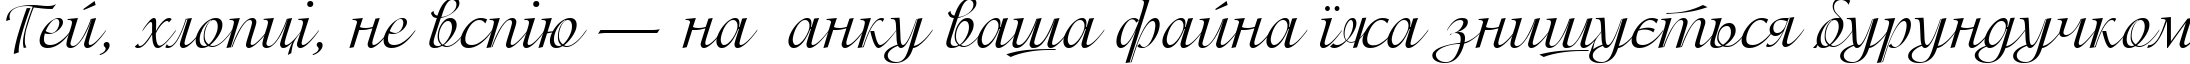 Пример написания шрифтом PG Isadora Cyr Pro Regular текста на украинском